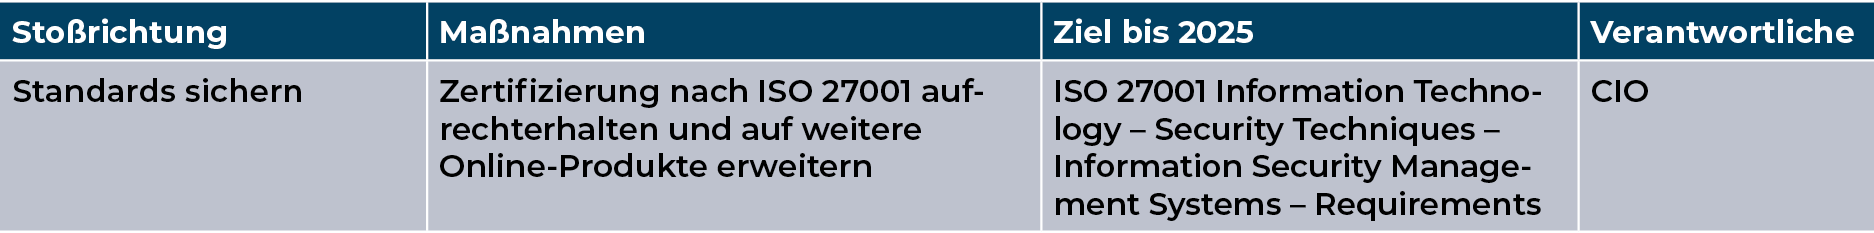 Mediengruppe Wiener Zeitung Nachhaltigkeitsbericht 2023 - mgwz_soziales_datensicherheit-FE